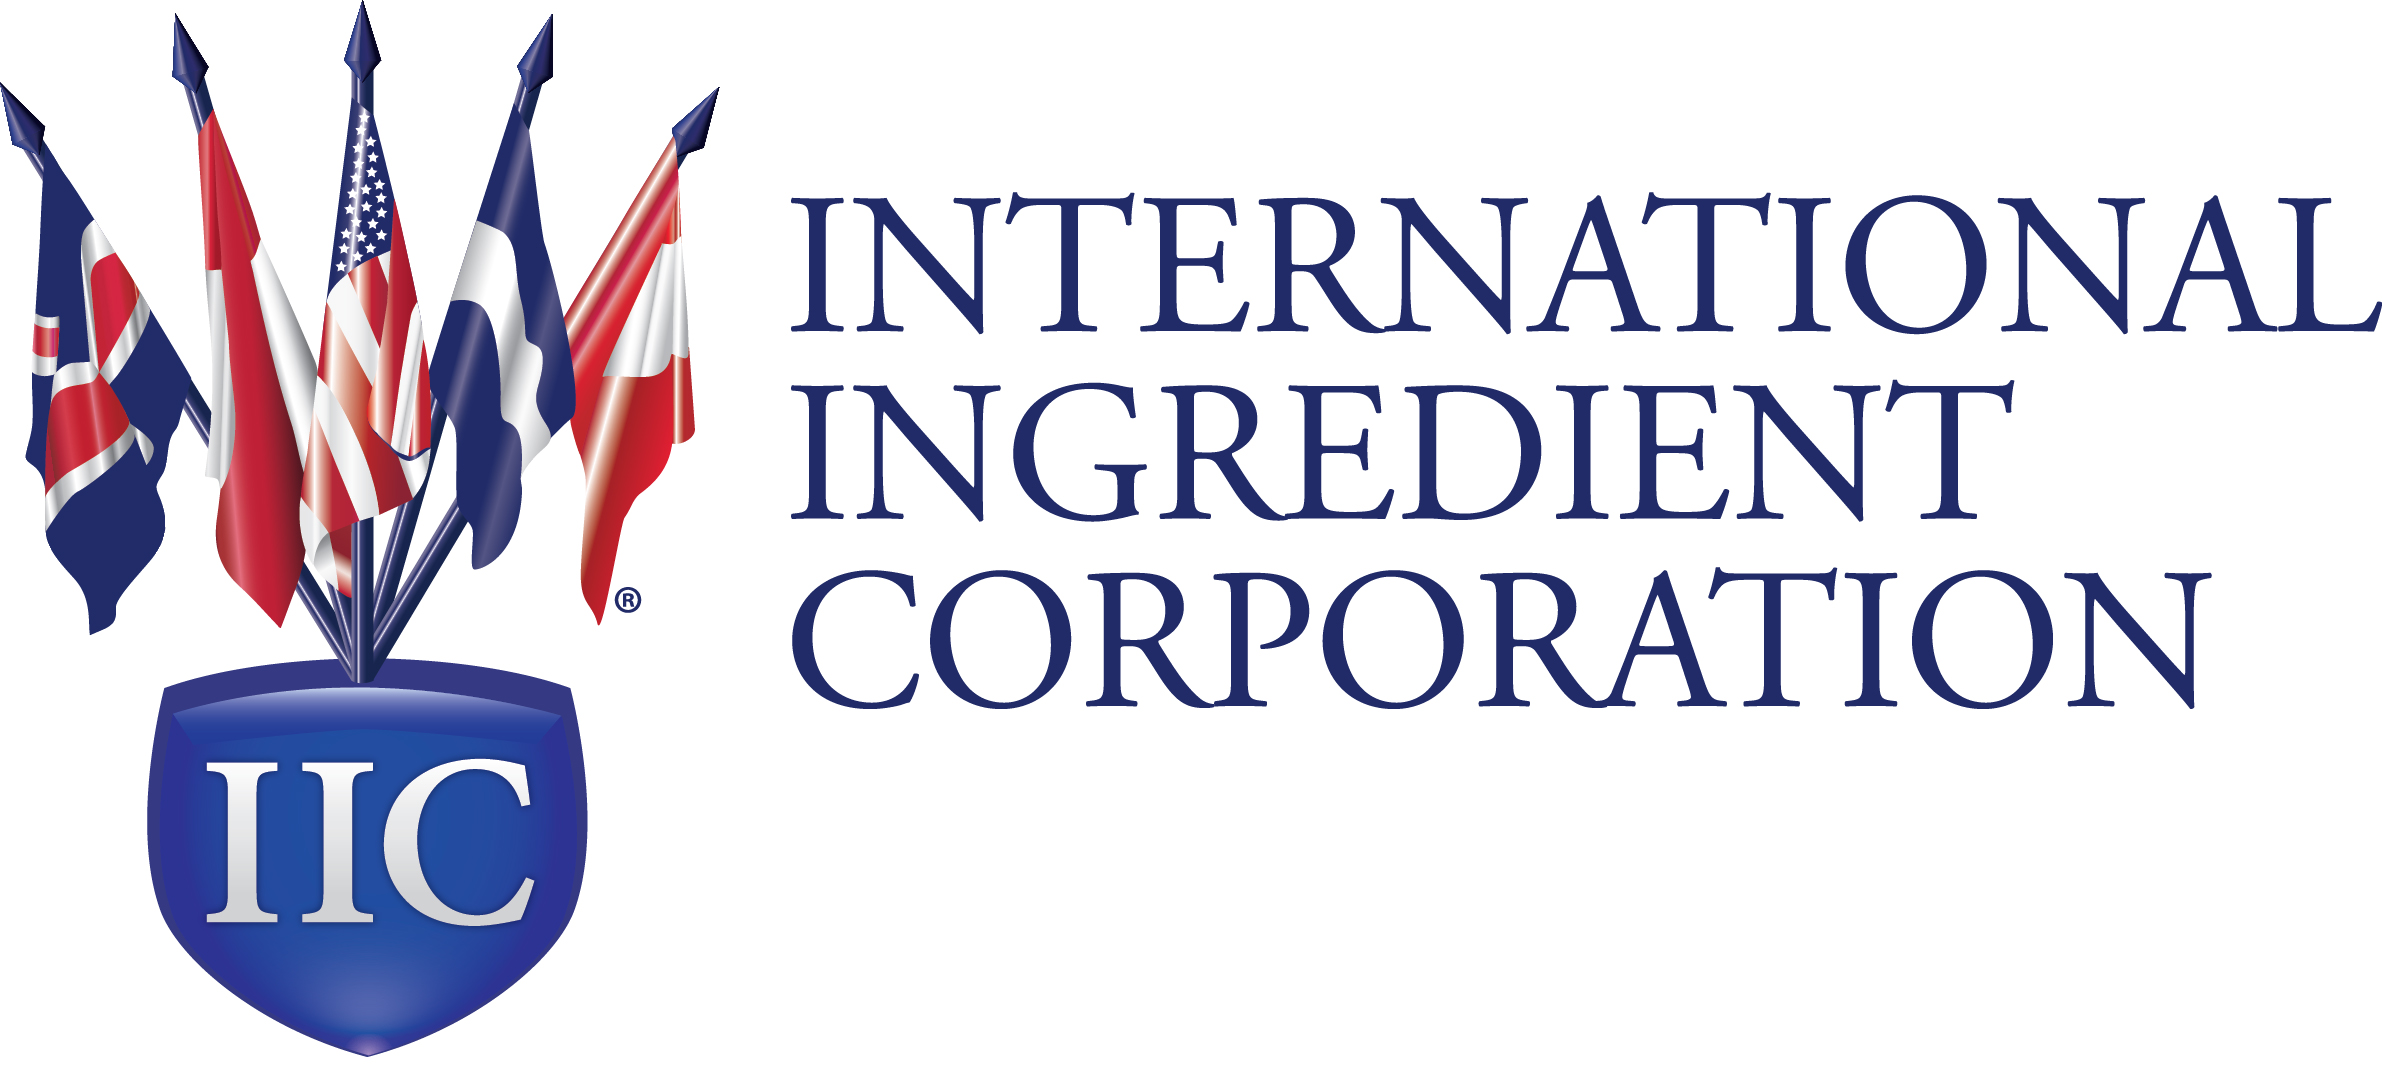 IIC Logo stacked-large